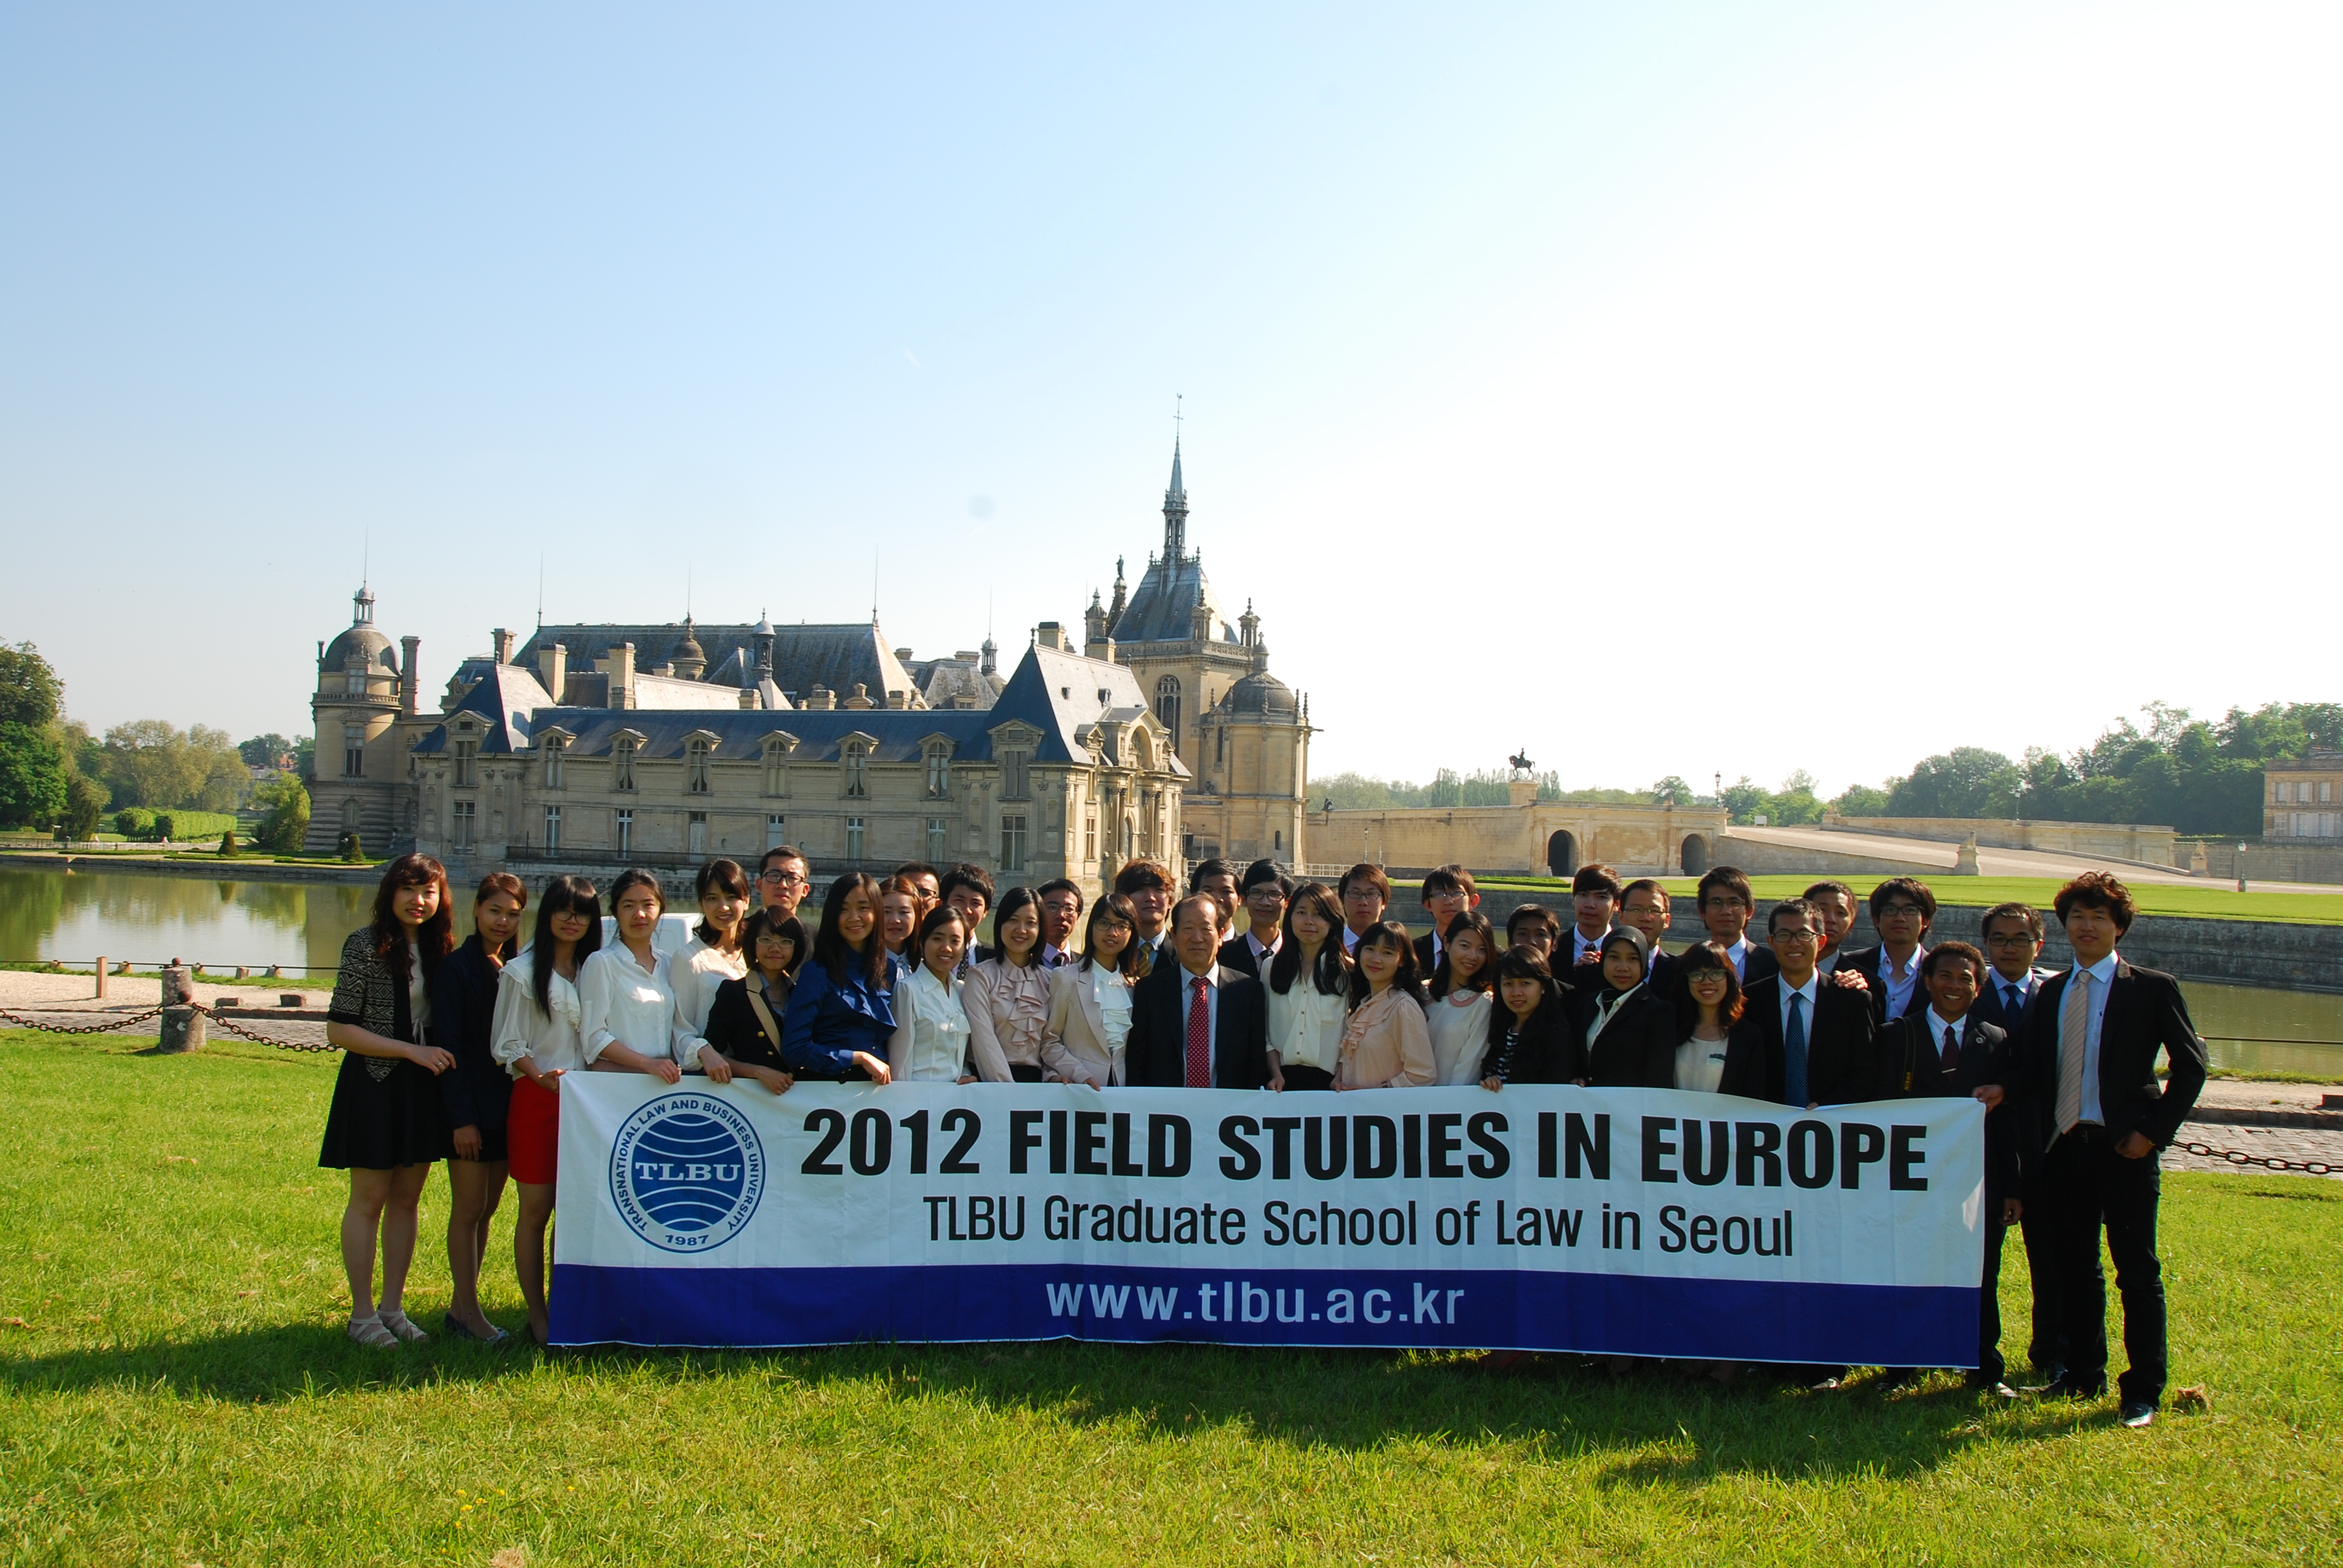 2012 Field Studies in Europe